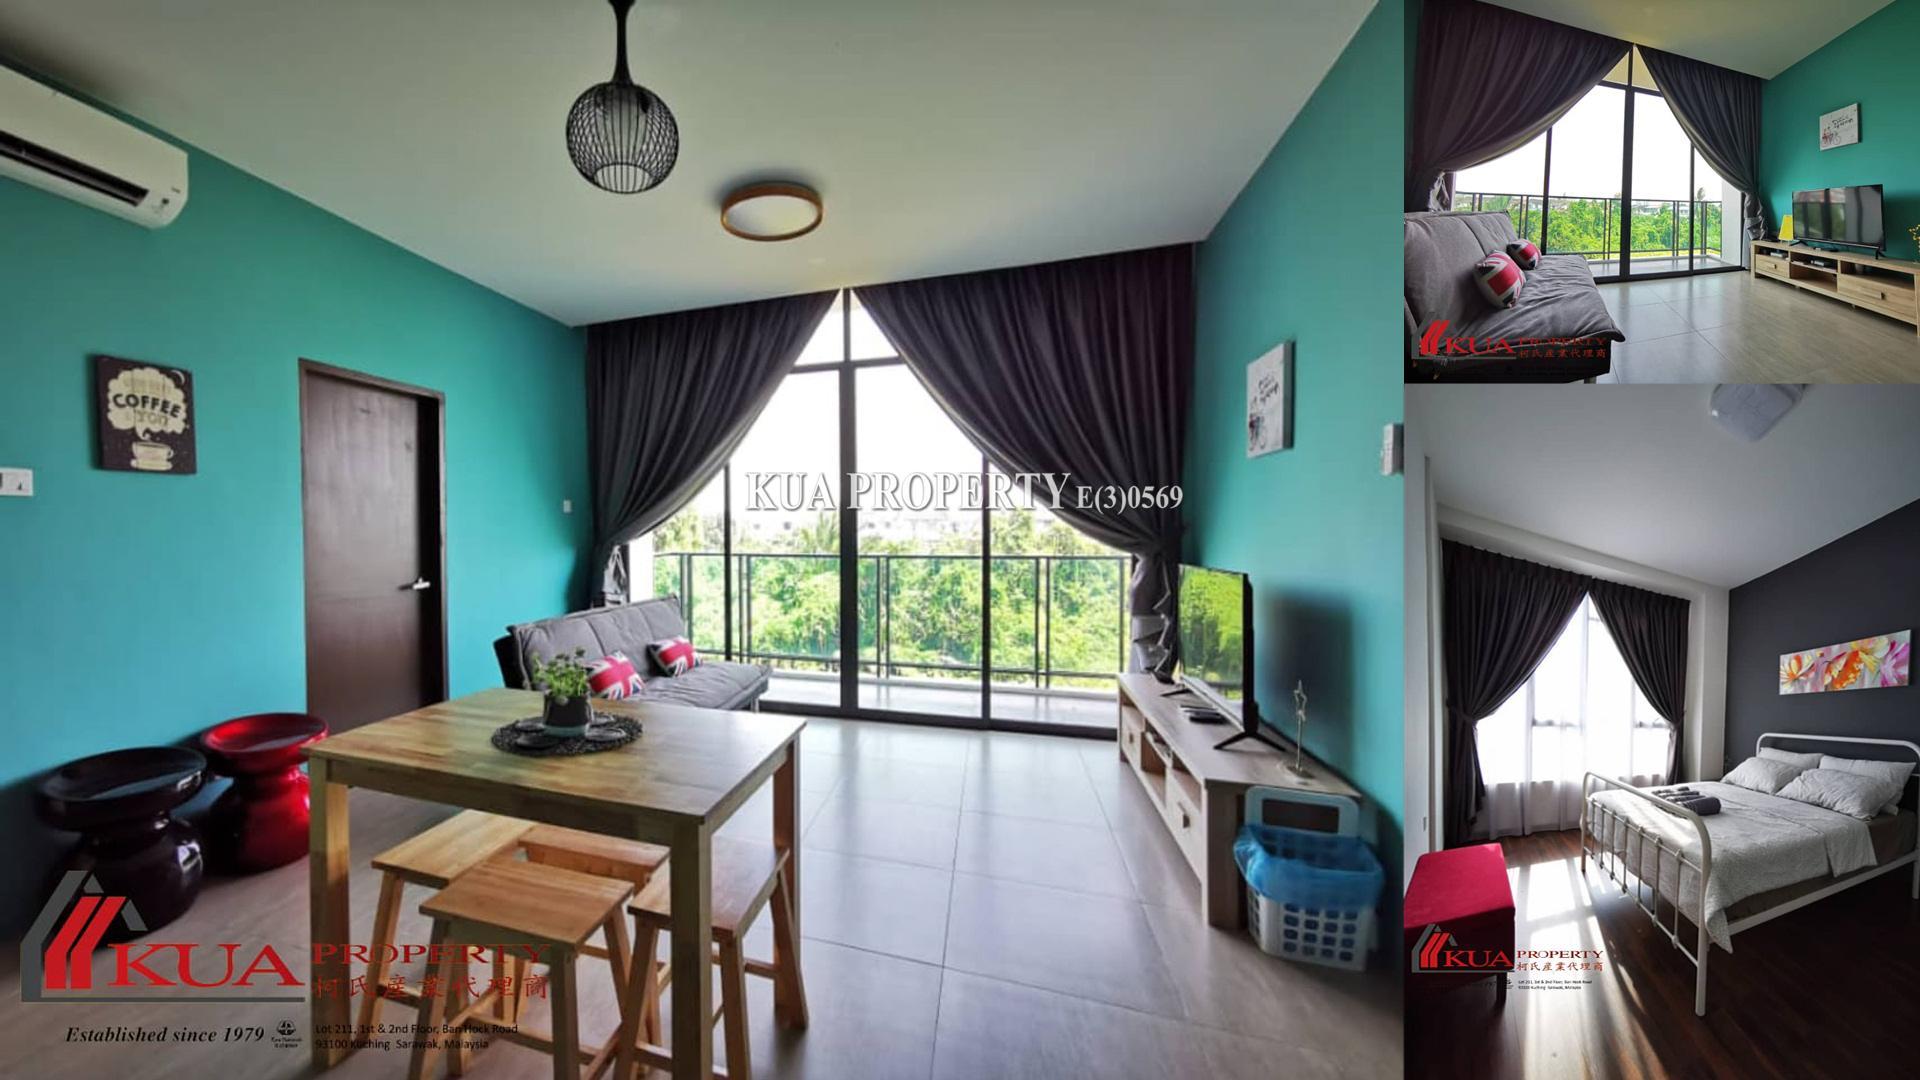 REX Apartment For Rent! at BDC, Kuching